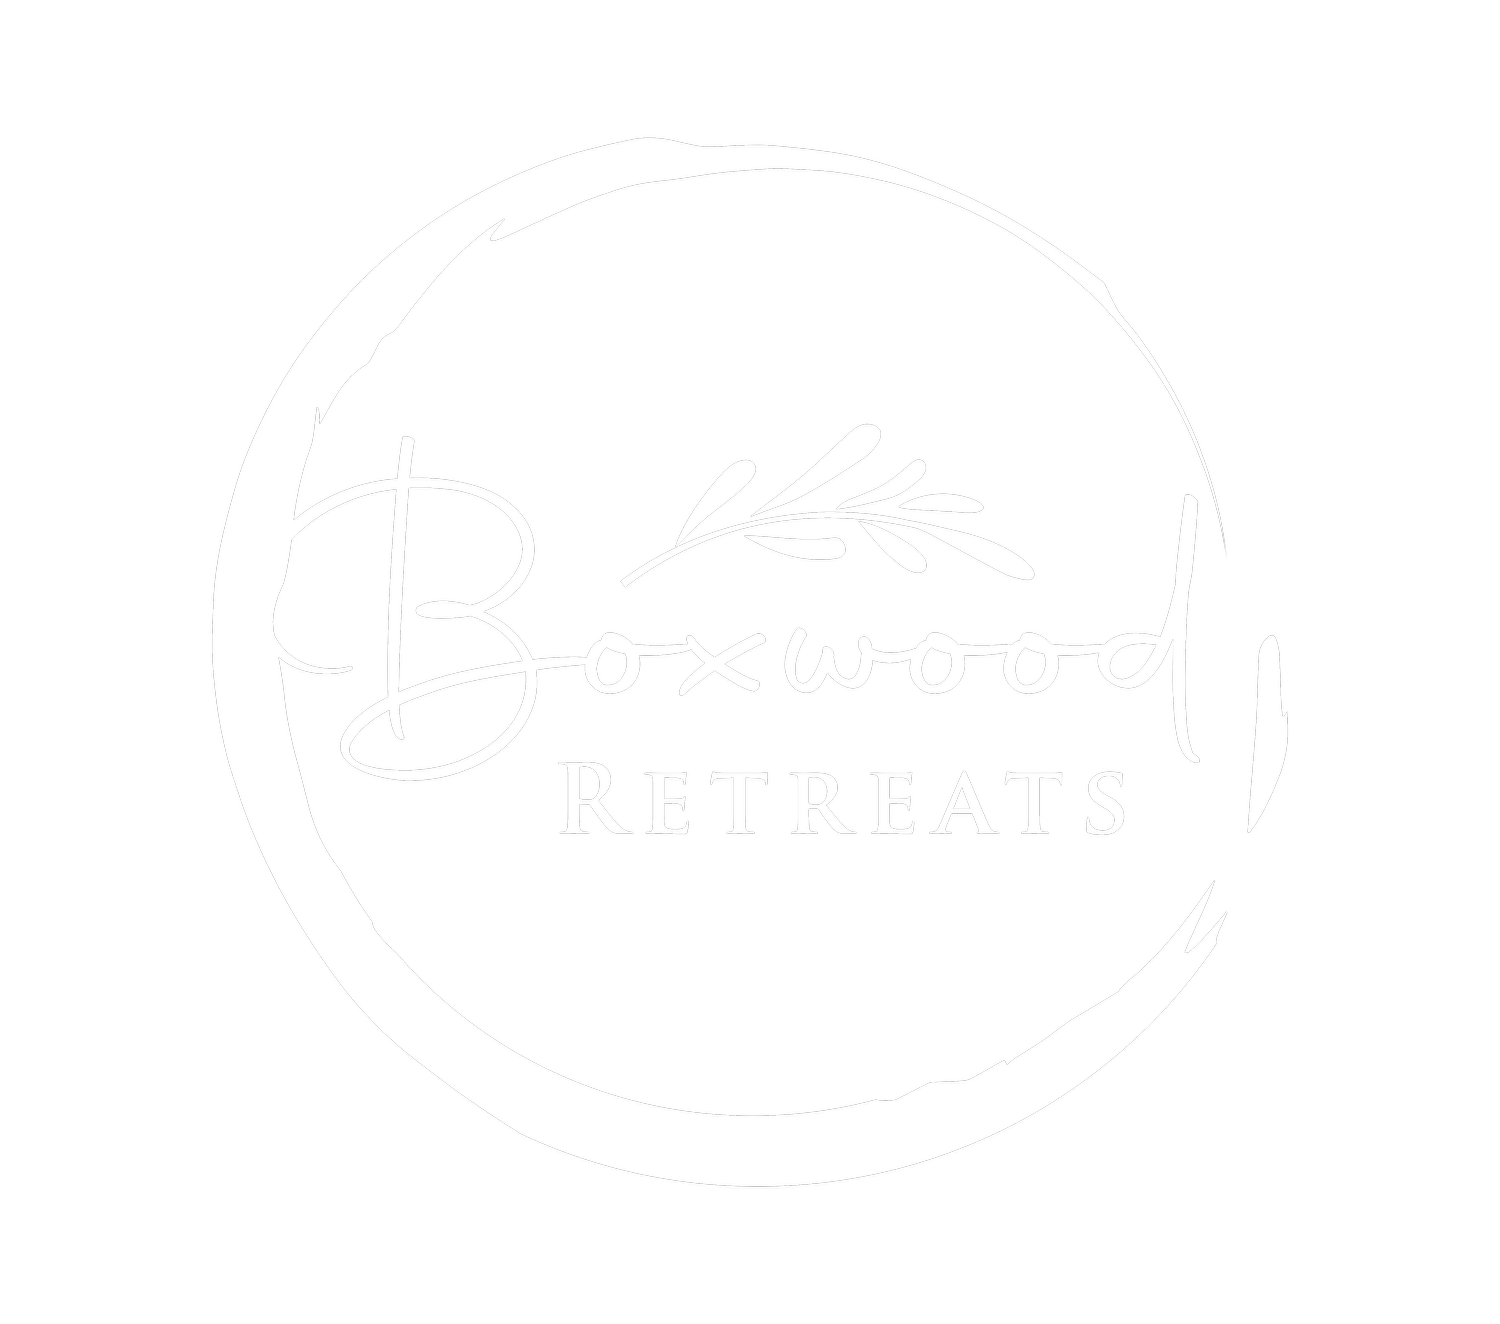 Boxwood Retreats